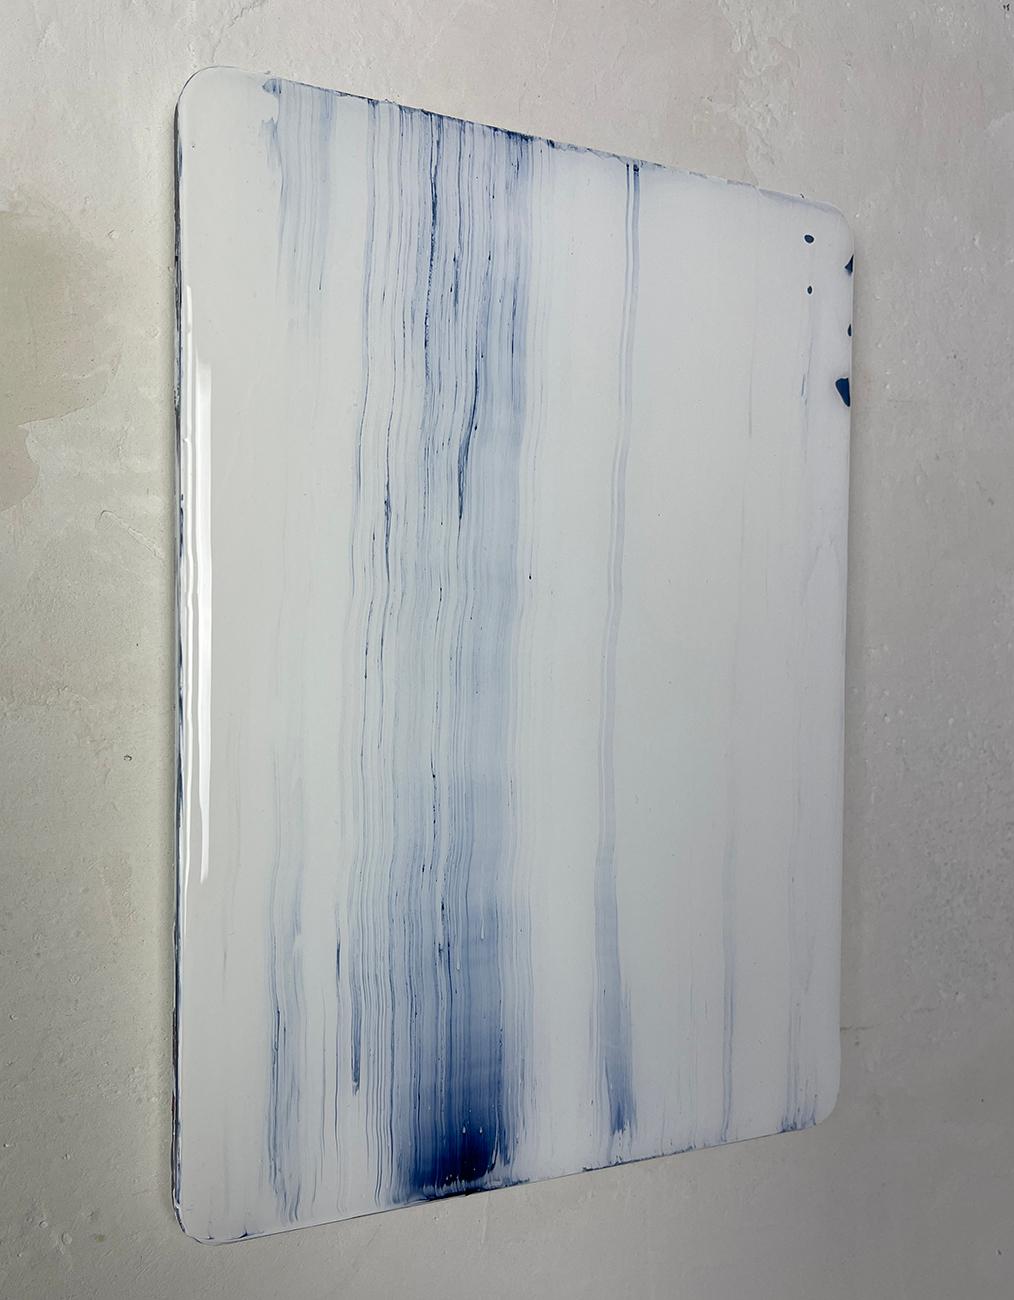 20240078 (Abstrakte Malerei)
Acryl und Kunstharz auf Alu-Dibond - ungerahmt.

Boecker beginnt jedes neue Werk, indem er seine Komposition mit dem Bleistift einträgt. Letztendlich geht es aber um die Farben und Schichten, die sich im Laufe der Zeit